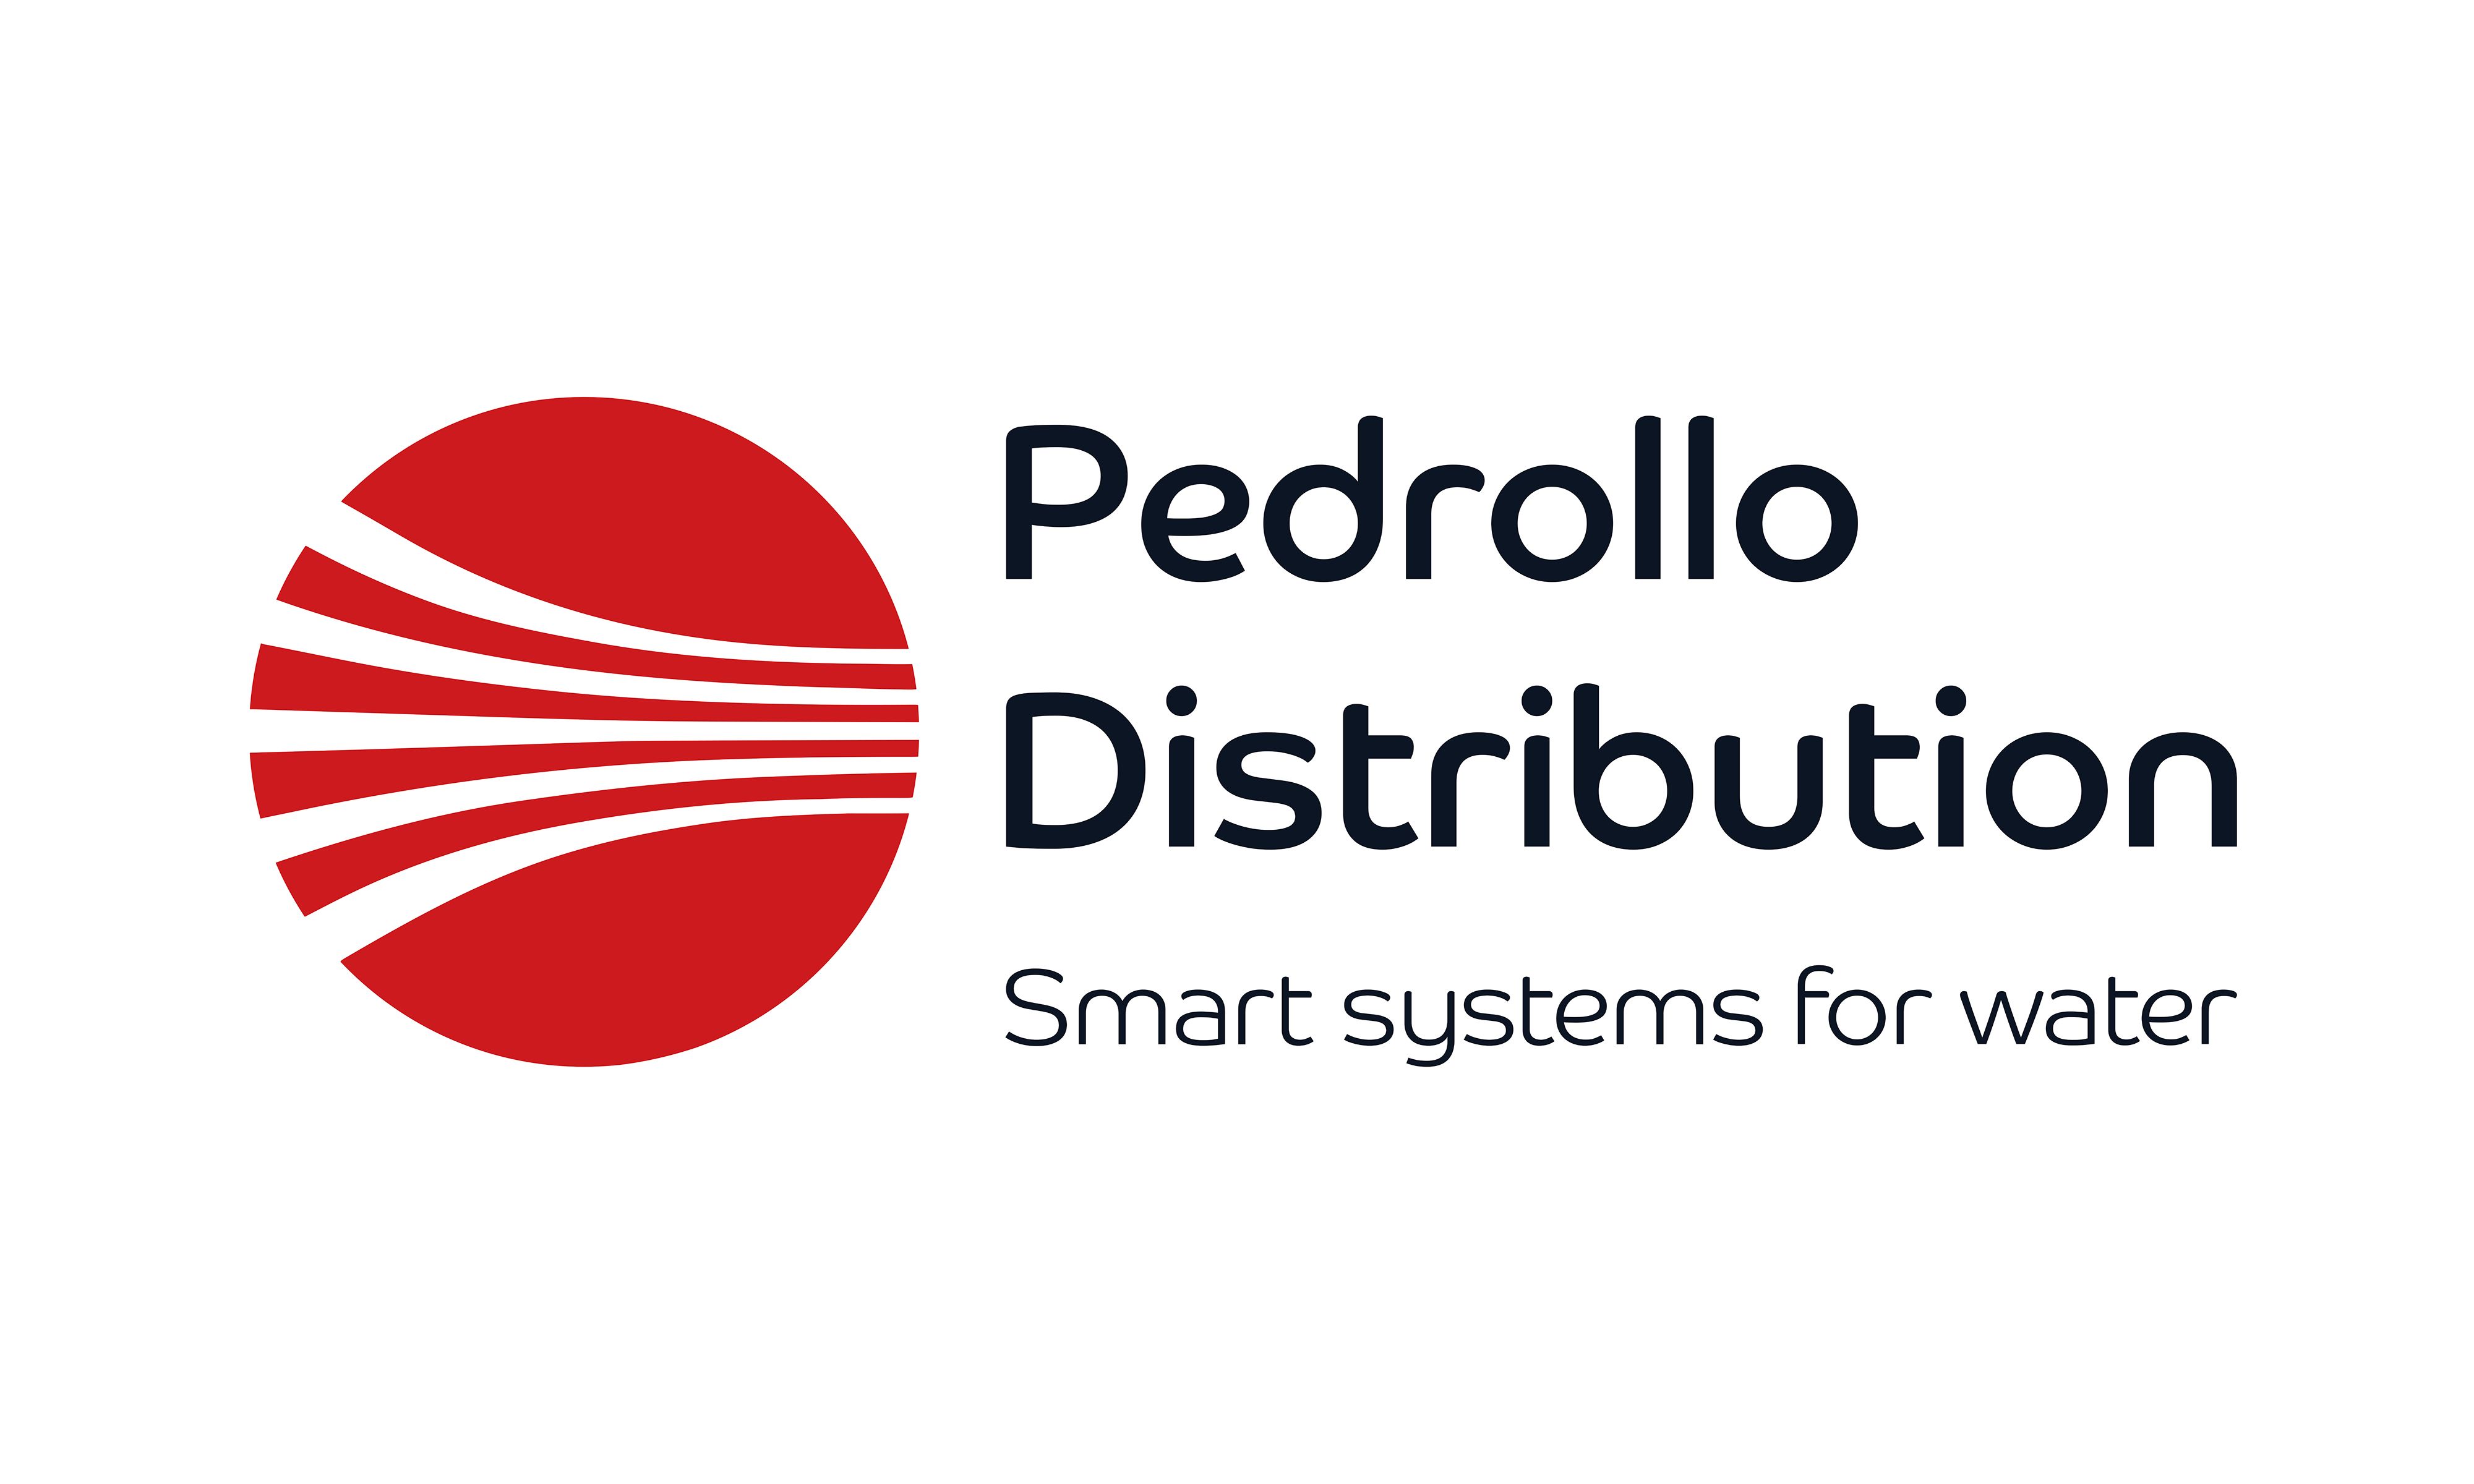 Pedrollo Distribution